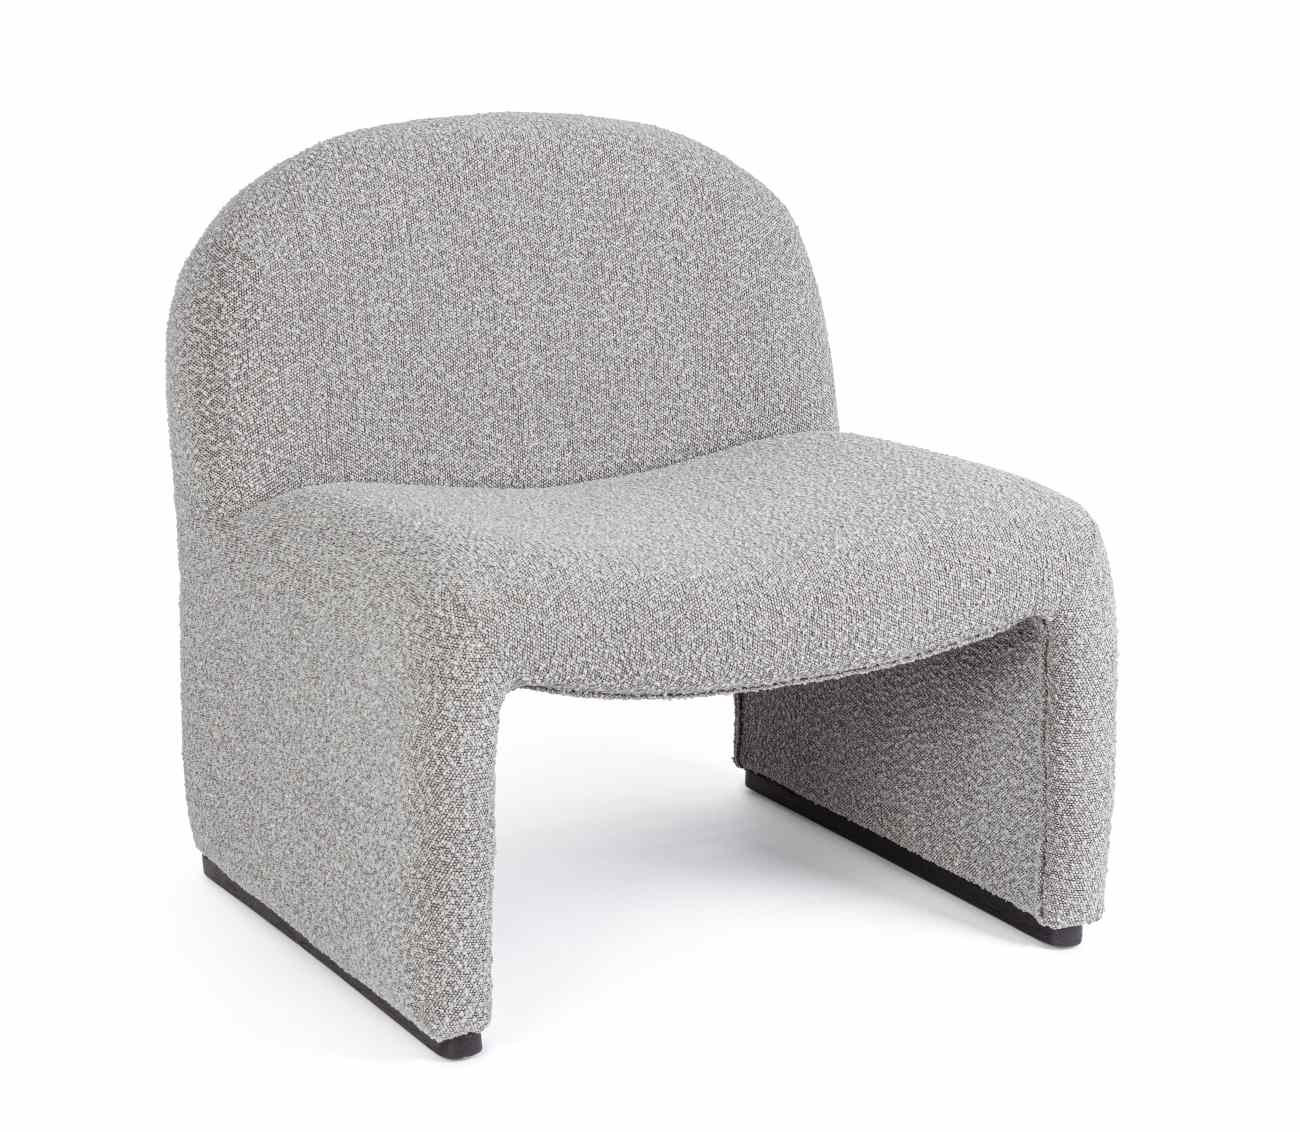 Der Sessel Bassilla überzeugt mit seinem modernen Stil. Gefertigt wurde er aus Boucle-Stoff, welcher einen grauen Farbton besitzt. Der Sessel besitzt eine Sitzhöhe von 42 cm.